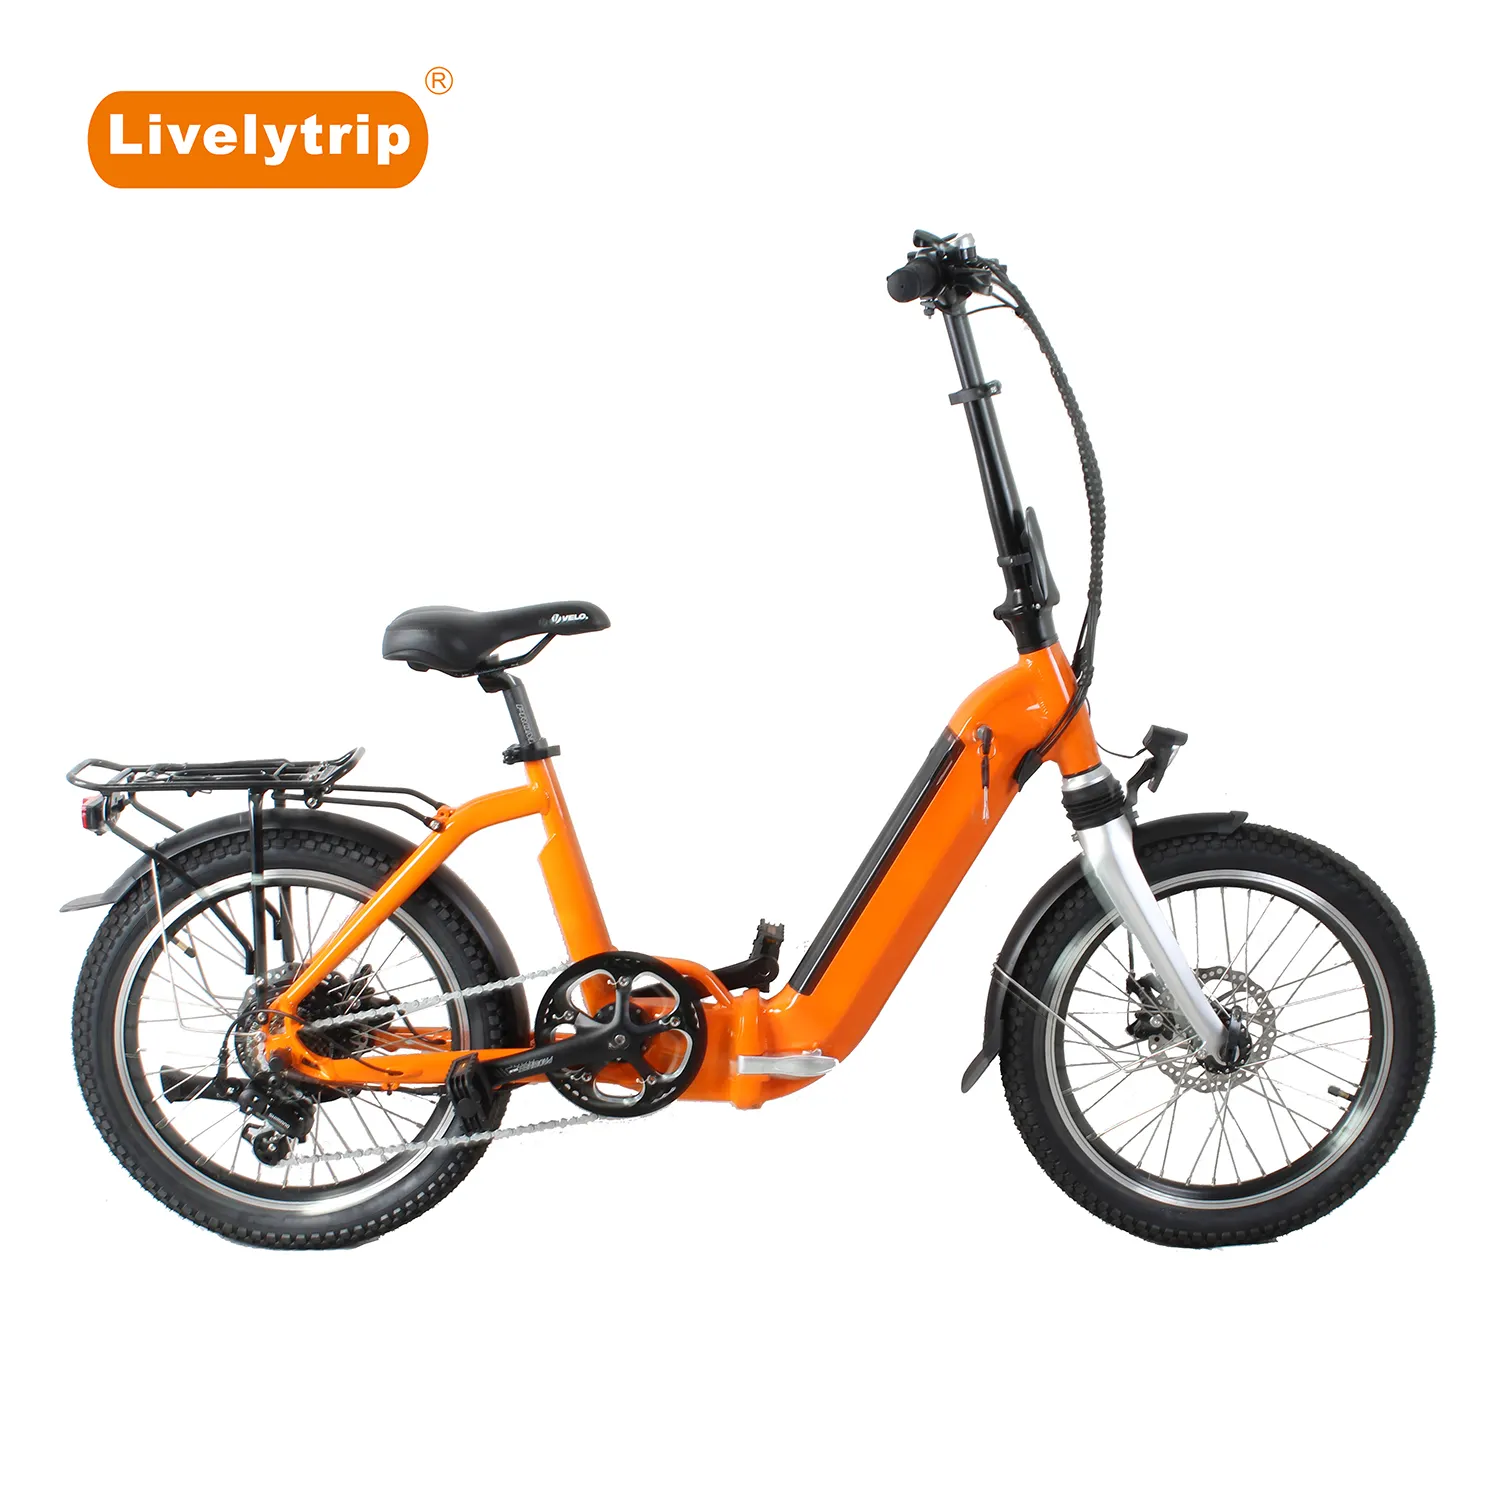 صغيرة و ضوء دراجة كهربائية قابلة للطي مدينة Ebike الطريق دراجة كهربائية طوي العمل Ebike